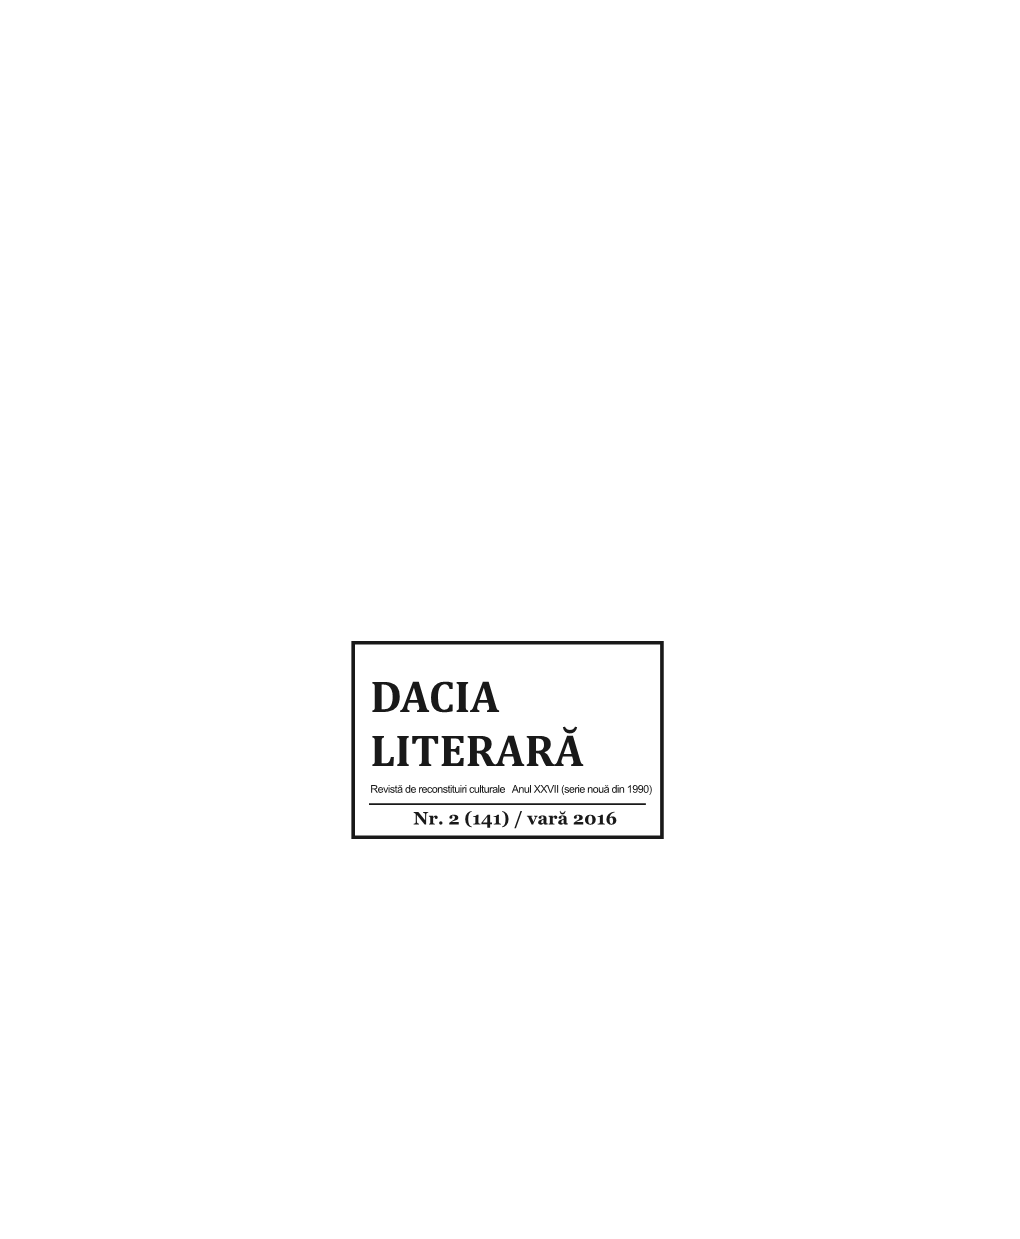 Dacia Literara